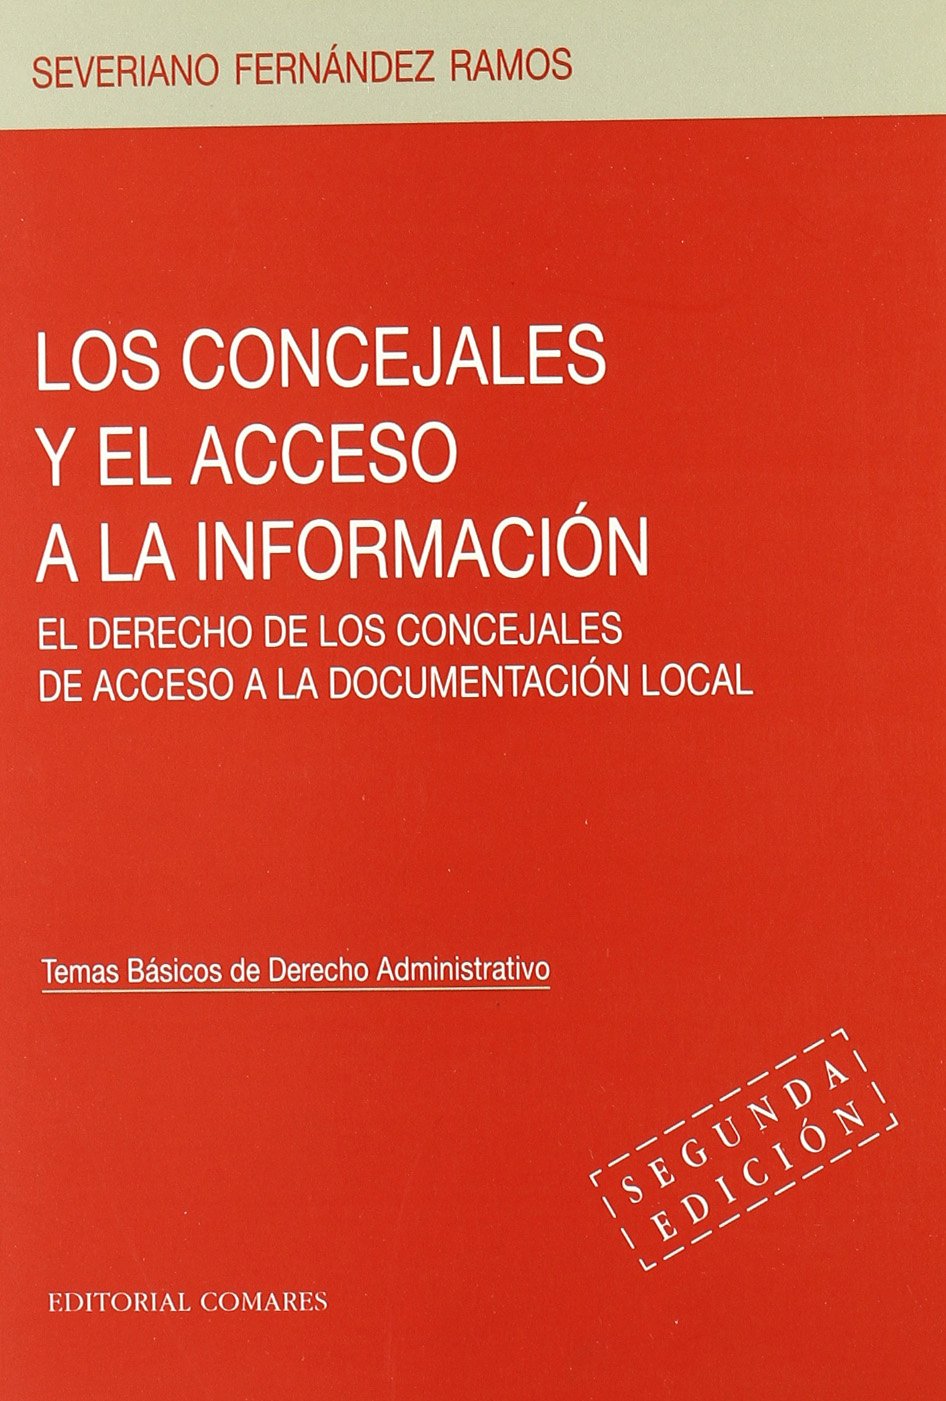 Los concejales y el acceso a la información